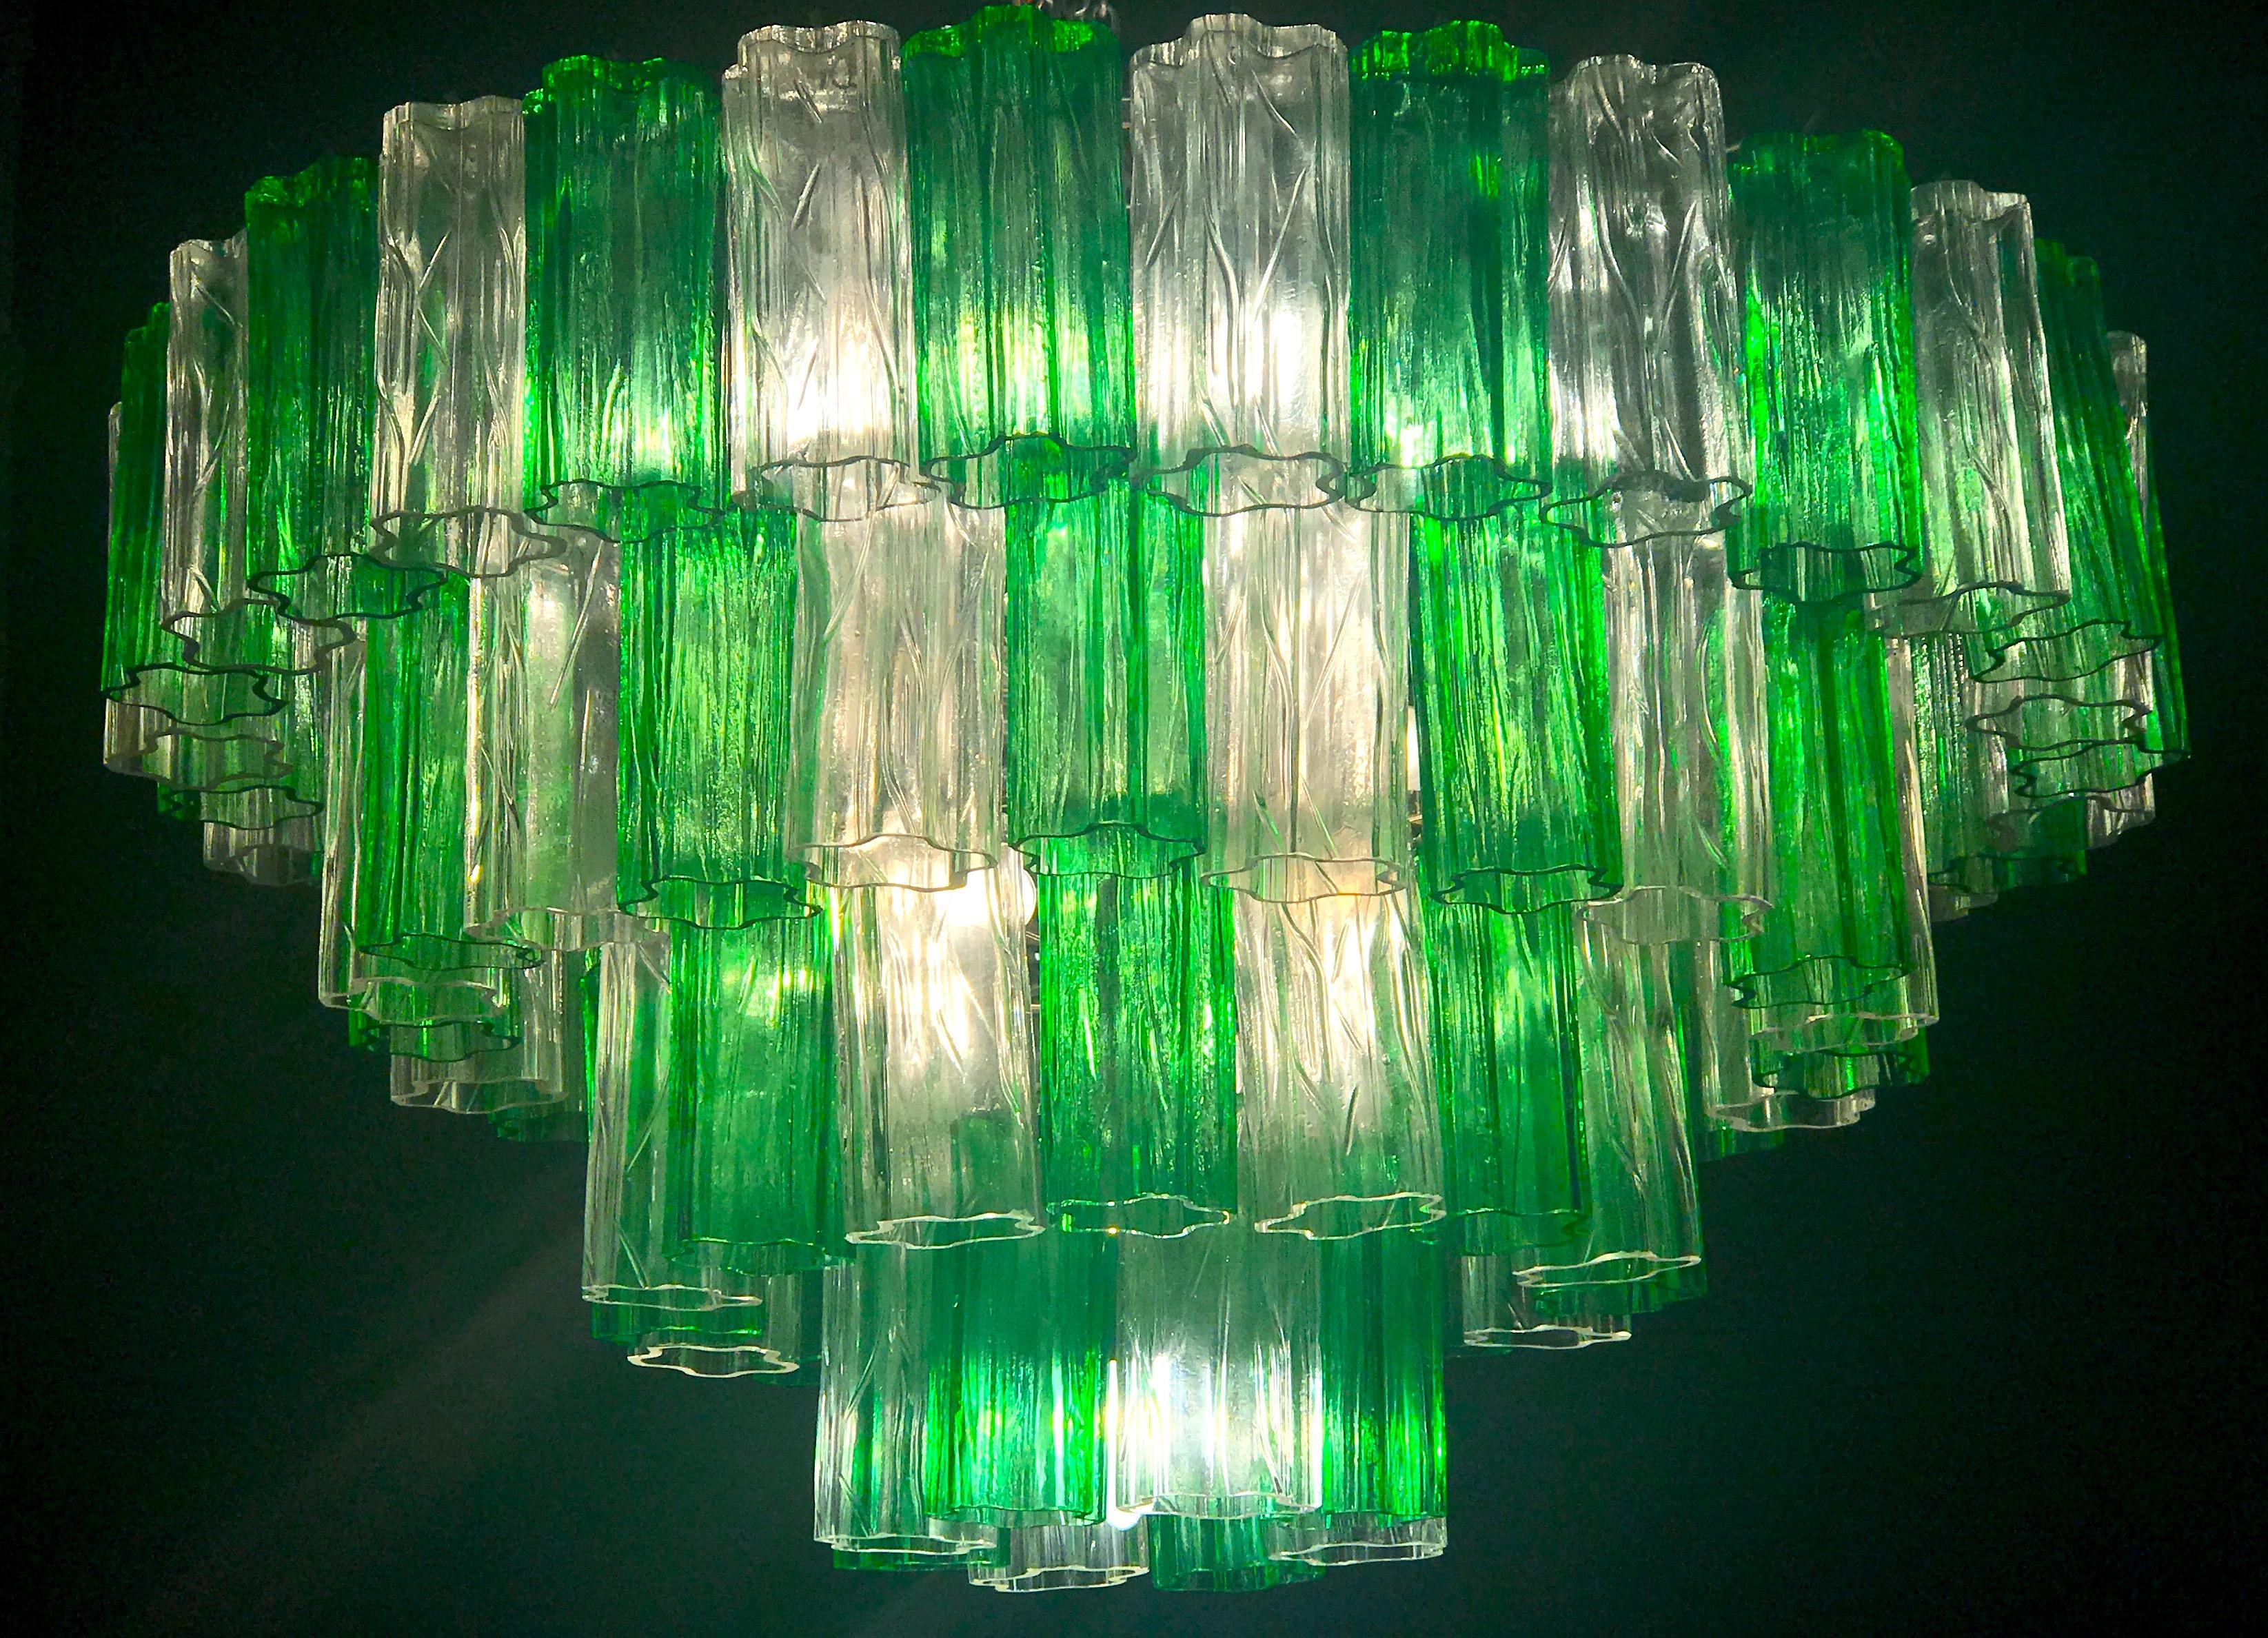 Diese herausragende Kronleuchter mit seltenen Farbkombination unter Berücksichtigung der Einzigartigkeit mit Smaragd und Eis Farbe kostbare Murano-Gläser. Jeder Kronleuchter besteht aus 80 mundgeblasenen Originalelementen, die von einem Chromrahmen